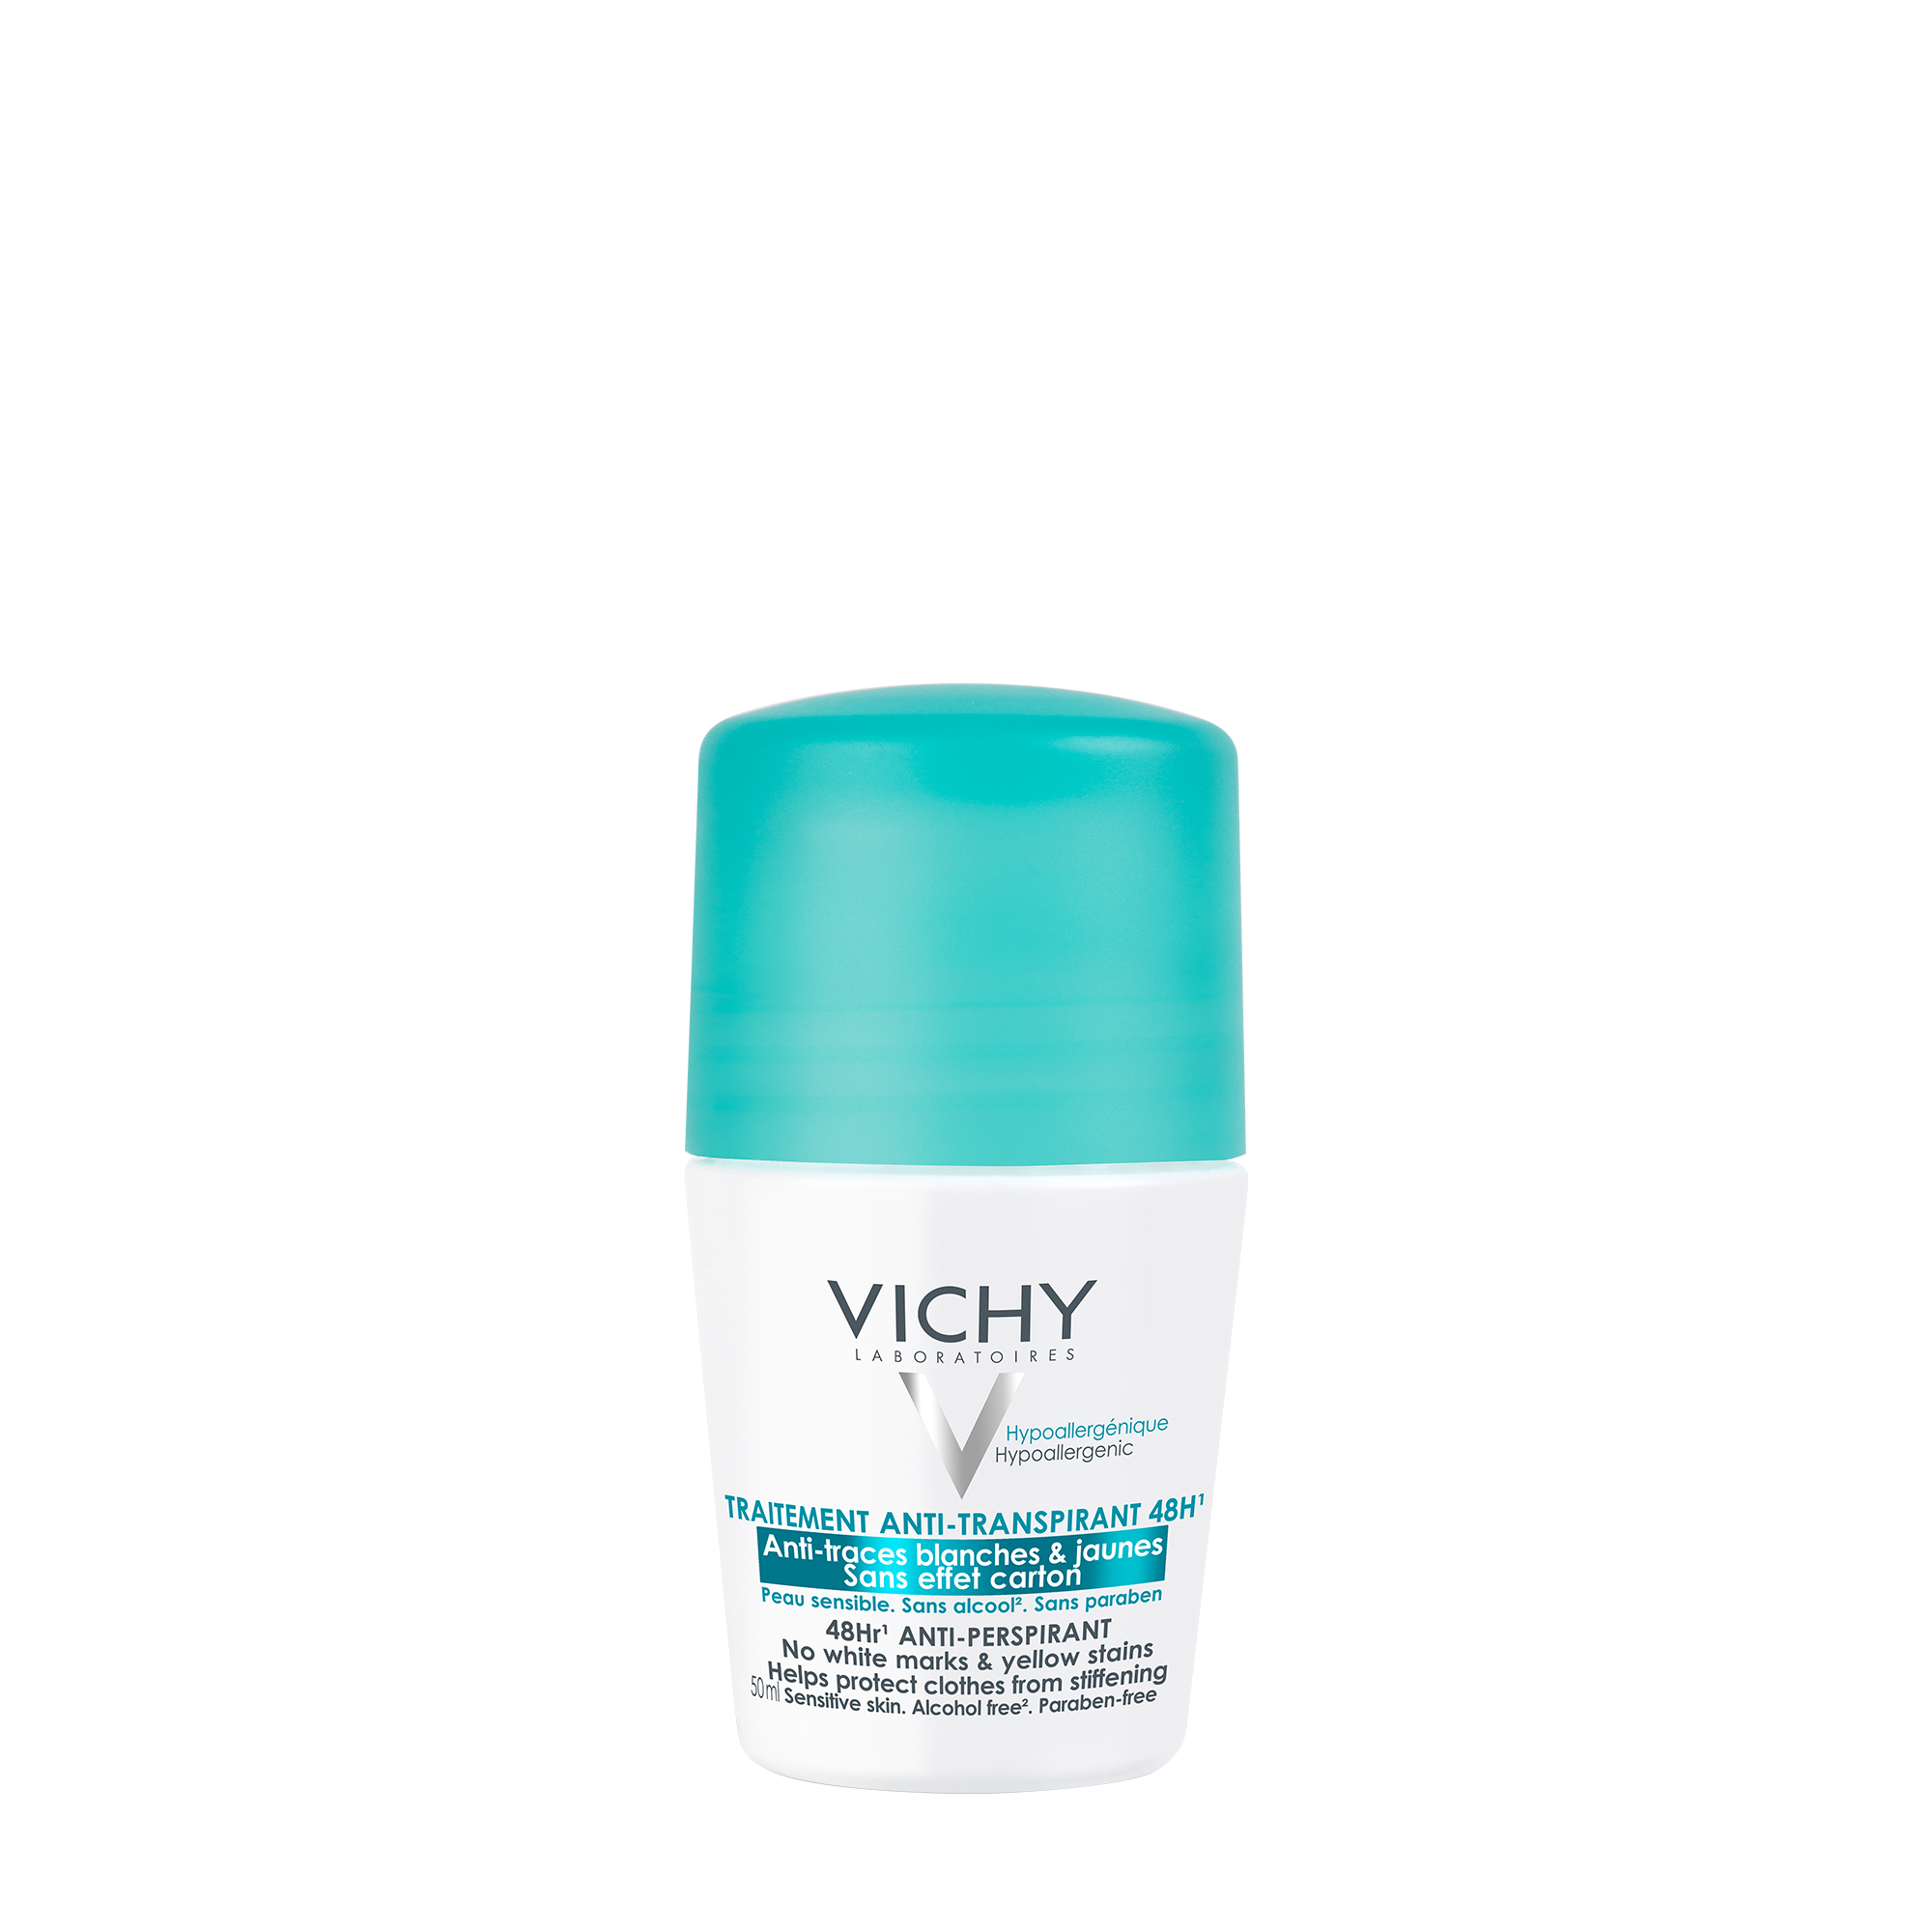 VICHY Déo anti-traces roll-on Deodorant Anti-Flecken Roll-On 